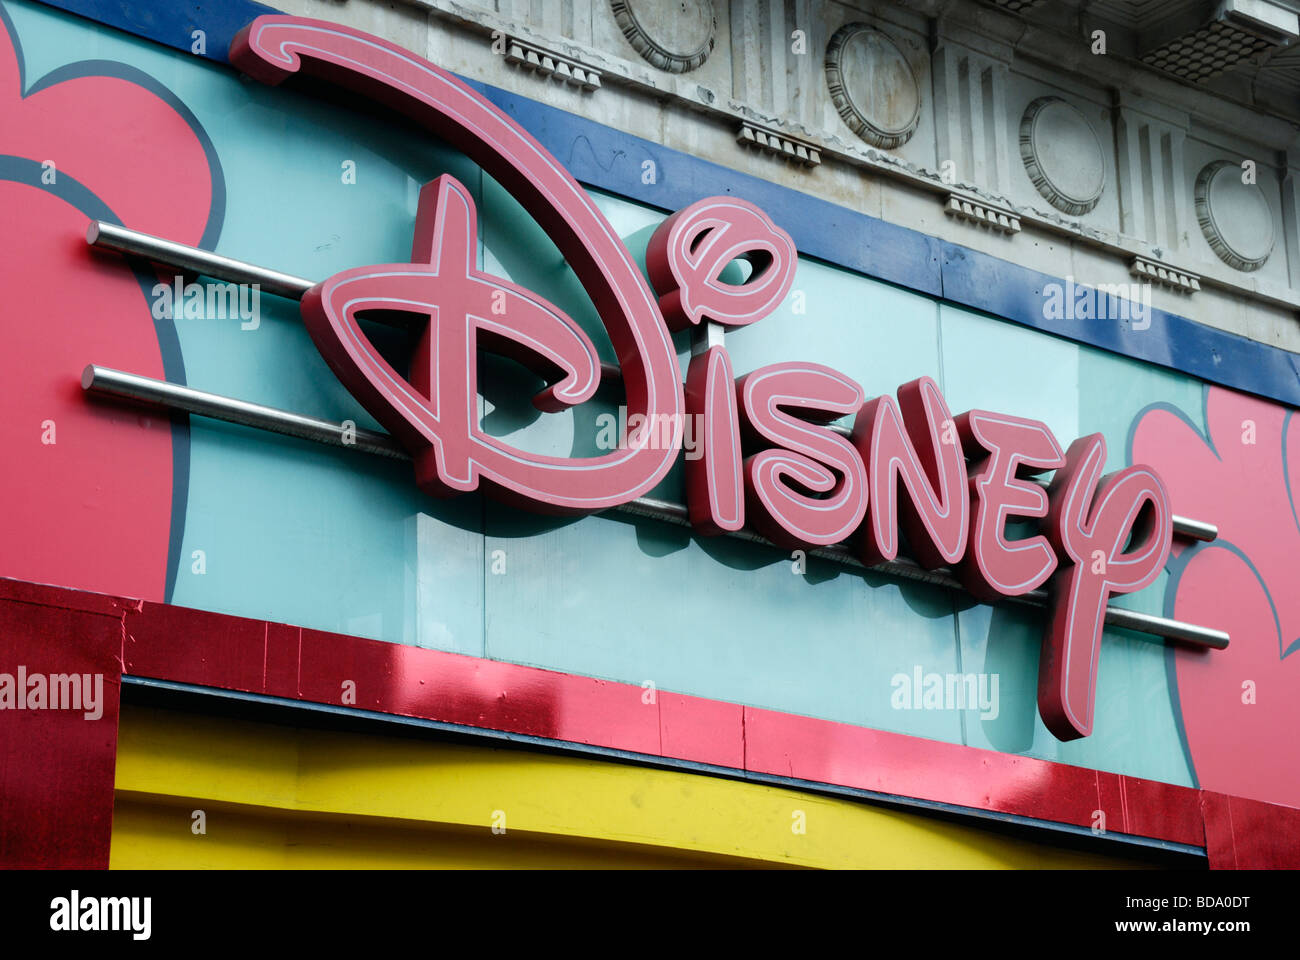 Disney logo above shop entrance Stock Photo